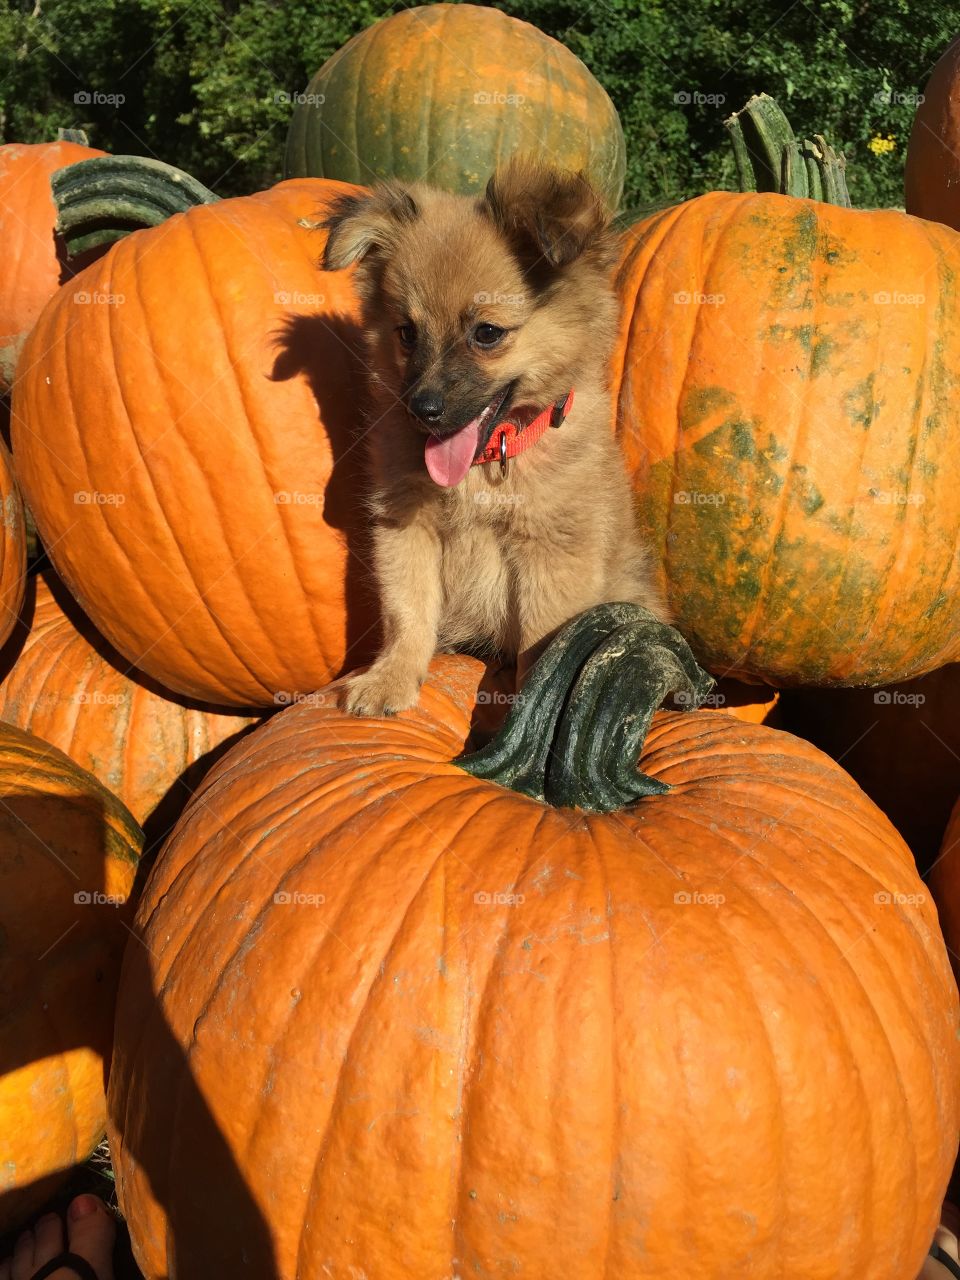 Pumpkin, Halloween, Fall, Thanksgiving, Gourd